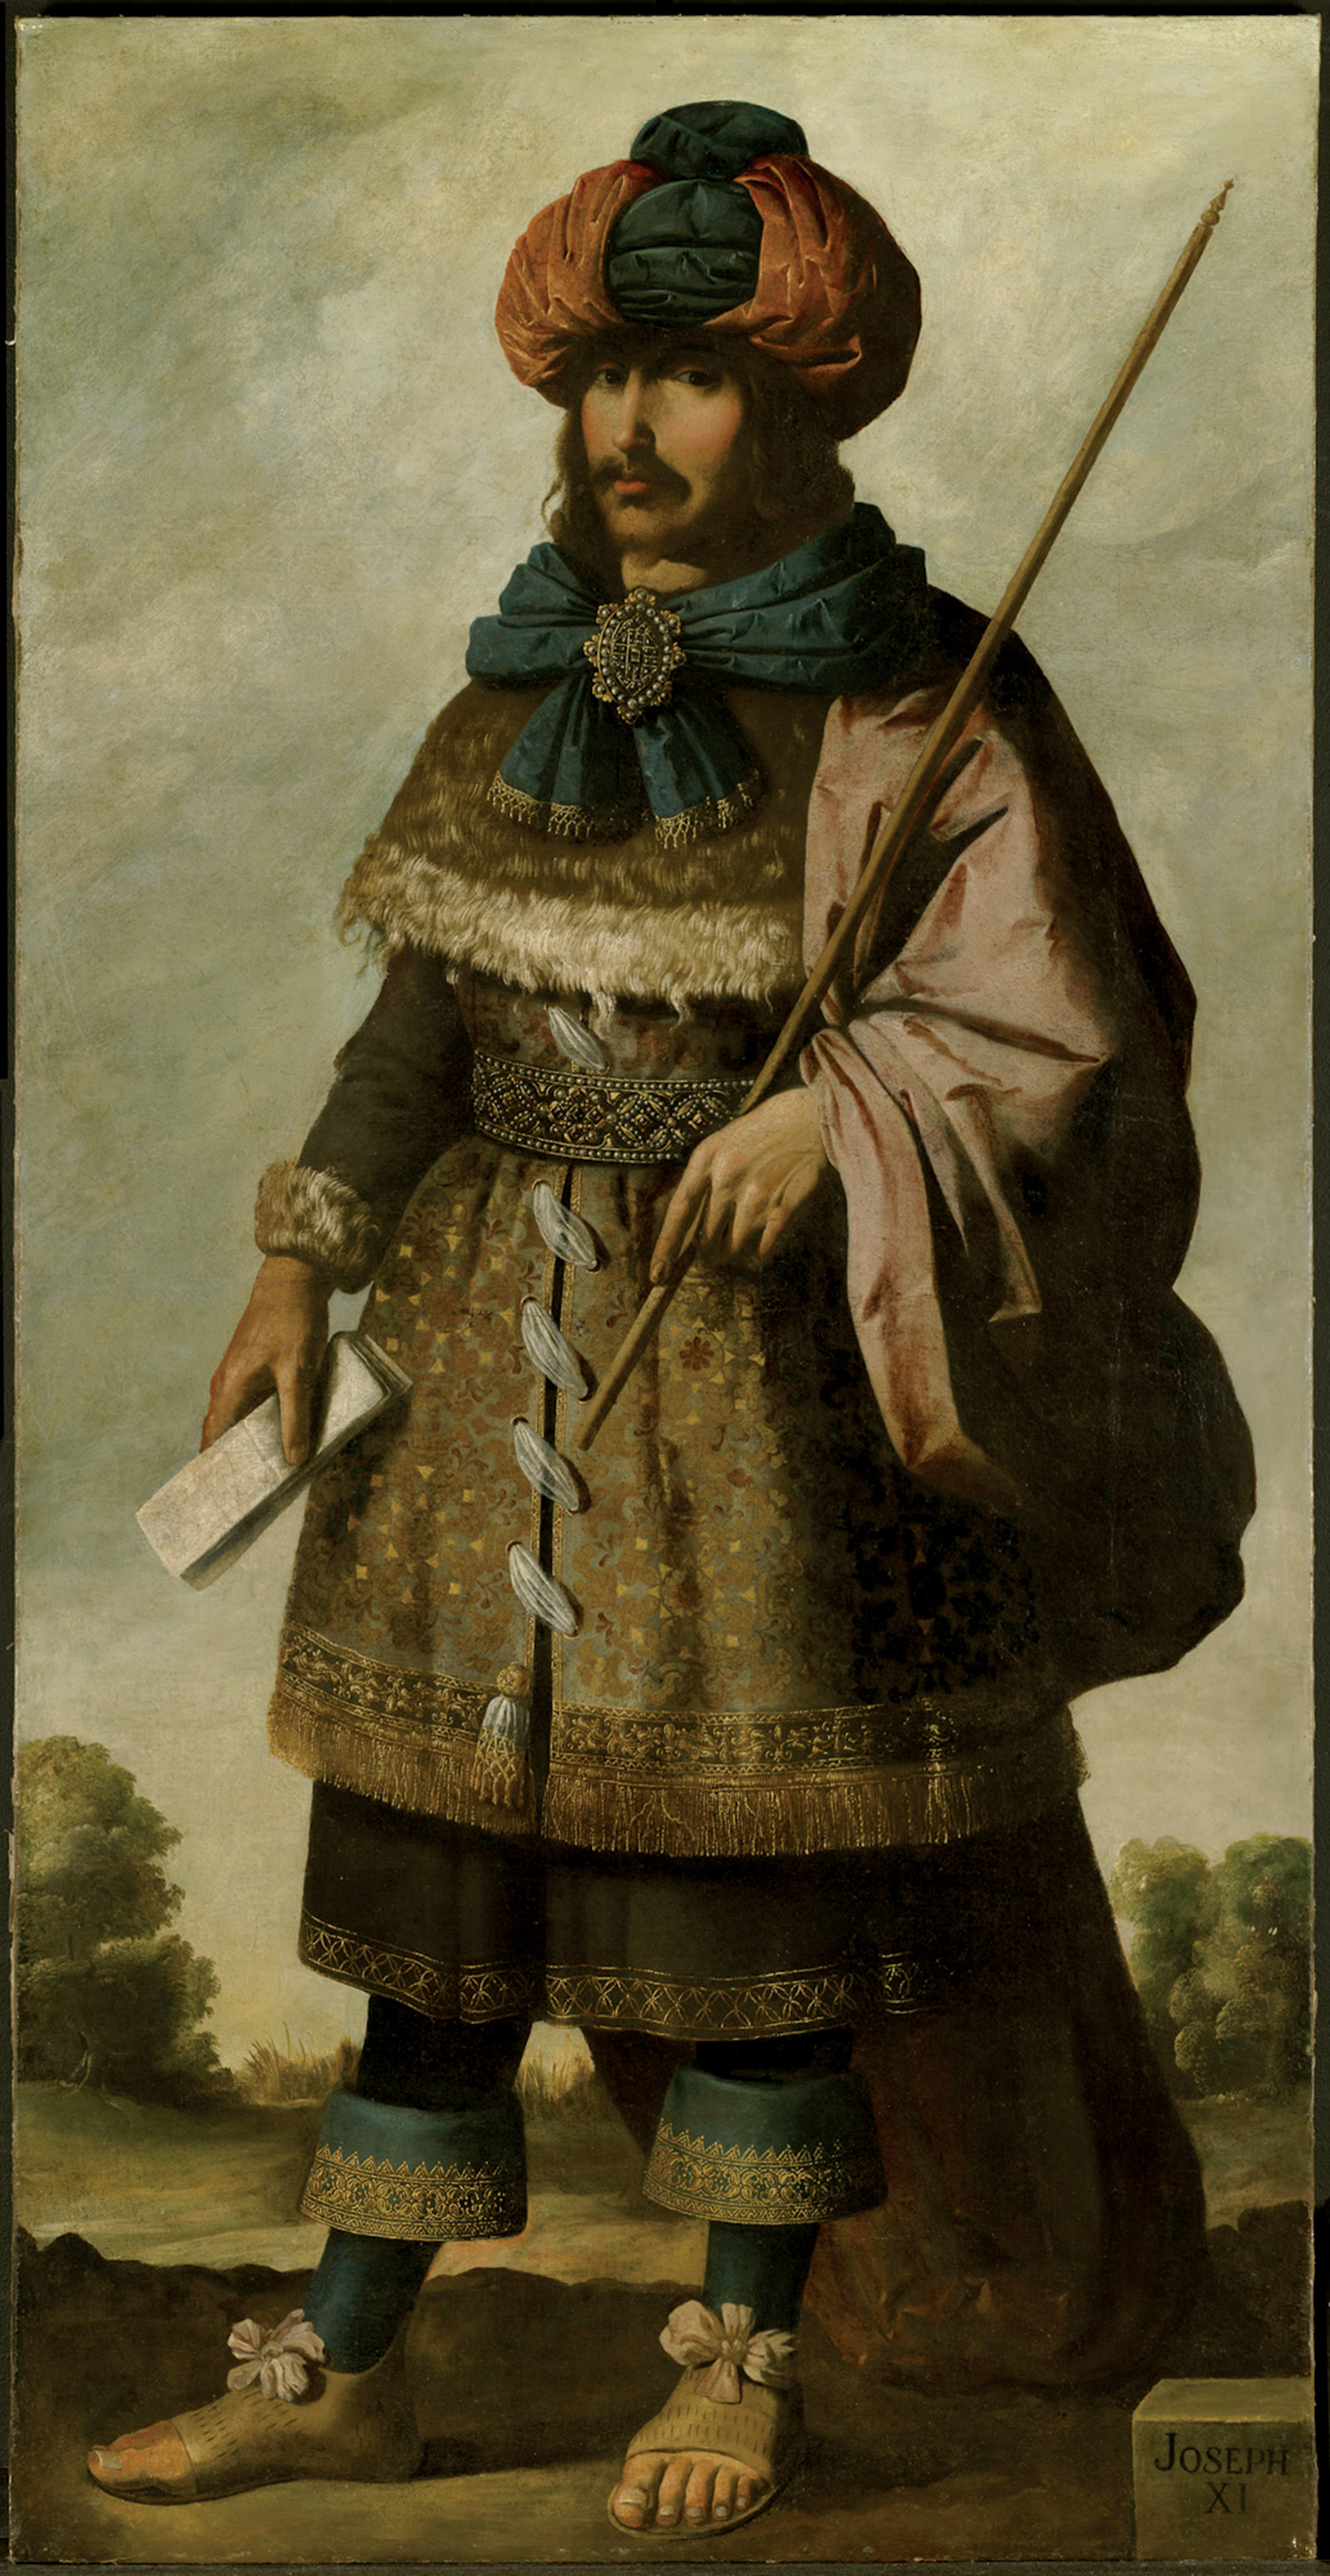 Francisco de Zurbarán: Joseph, circa 1640–1645